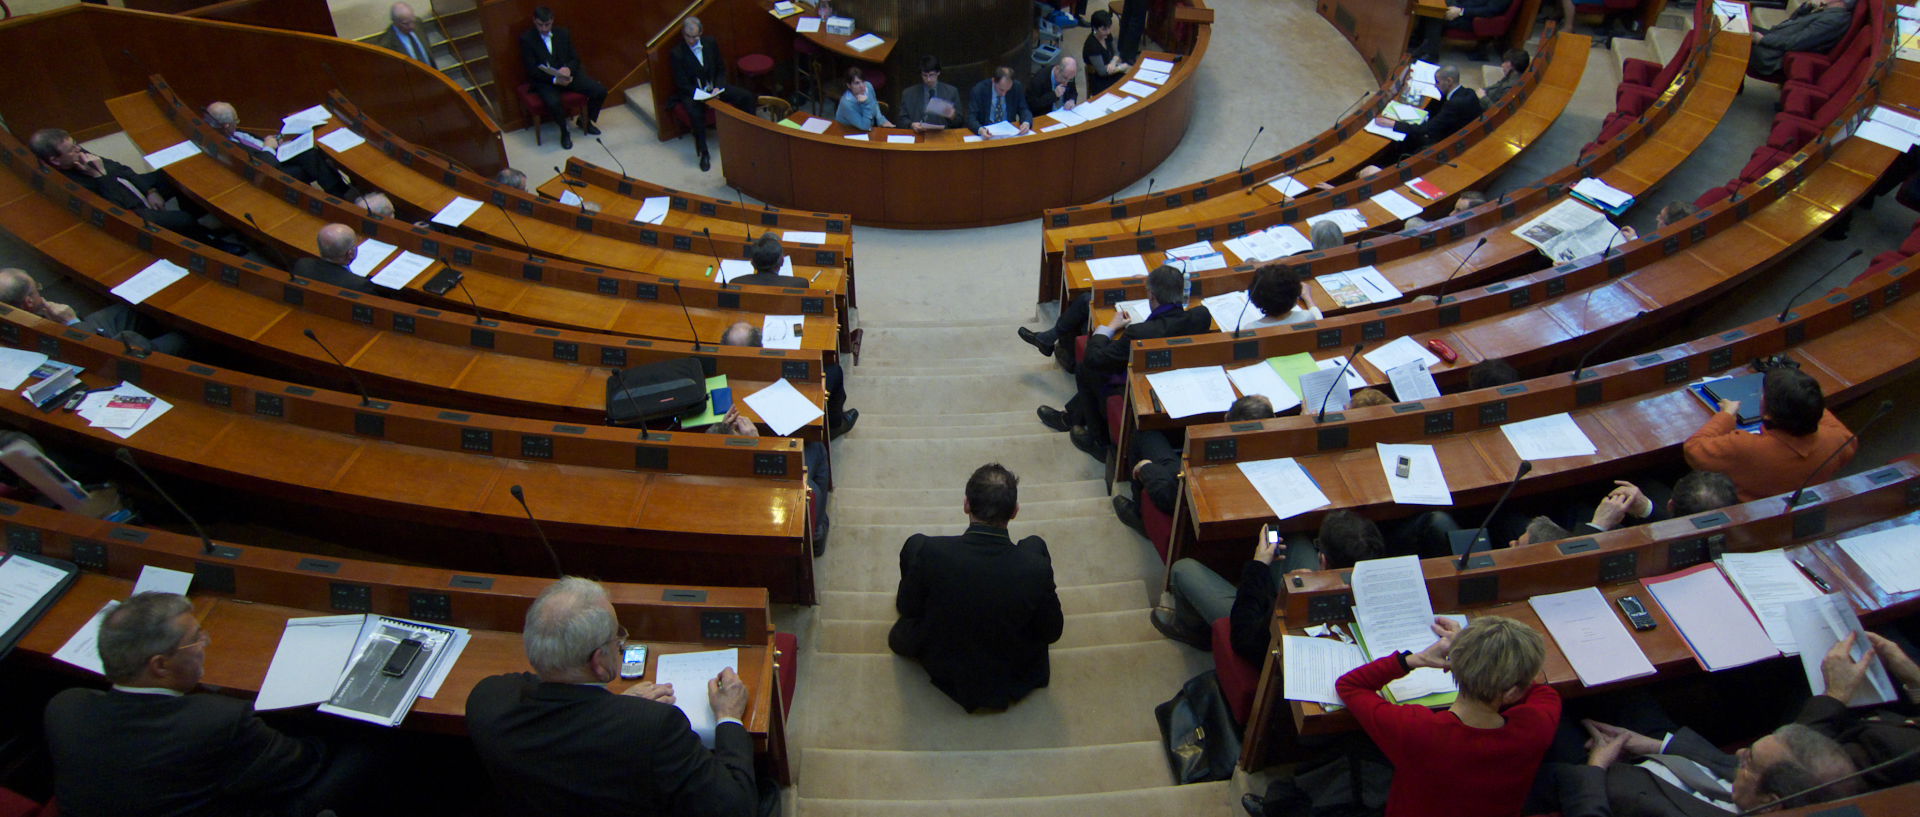 Mercredi 25 février 2009, 14:44, au Conseil économique et social, place d'Iéna, à Paris.